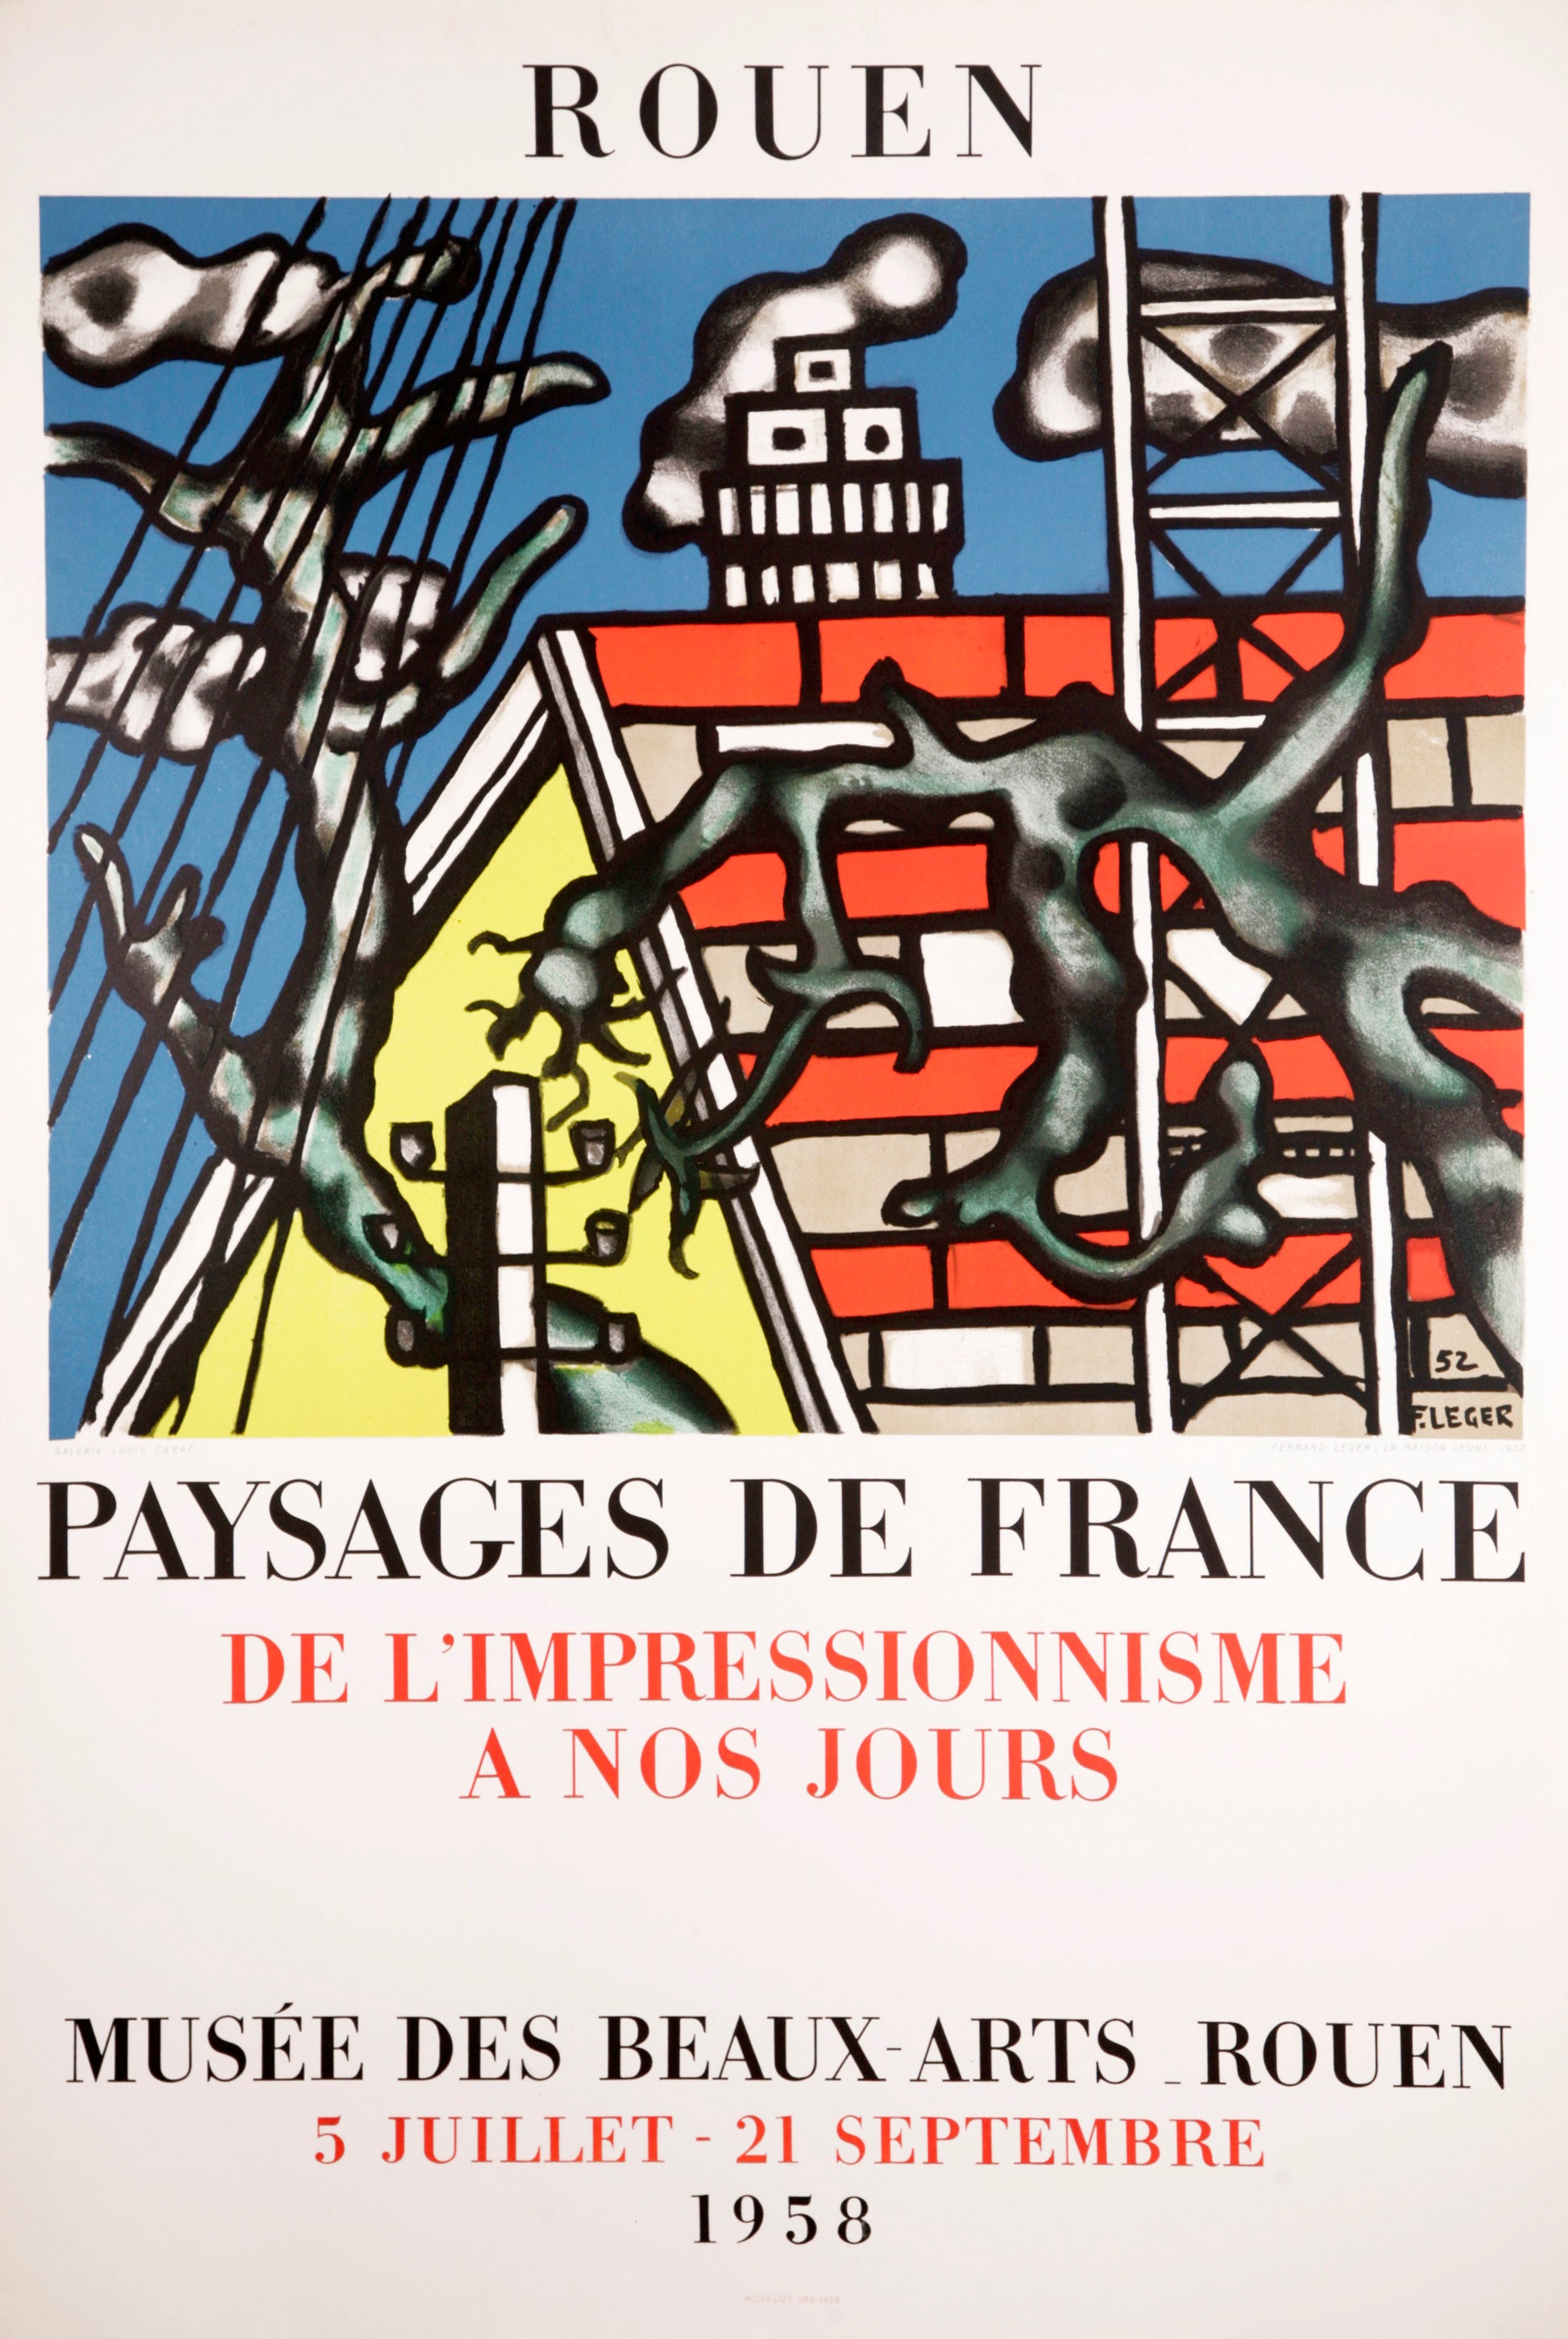 Paysages de France - Rouen (after) Fernand Leger, 1958 - Mourlot Editions - Fine_Art - Poster - Lithograph - Wall Art - Vintage - Prints - Original